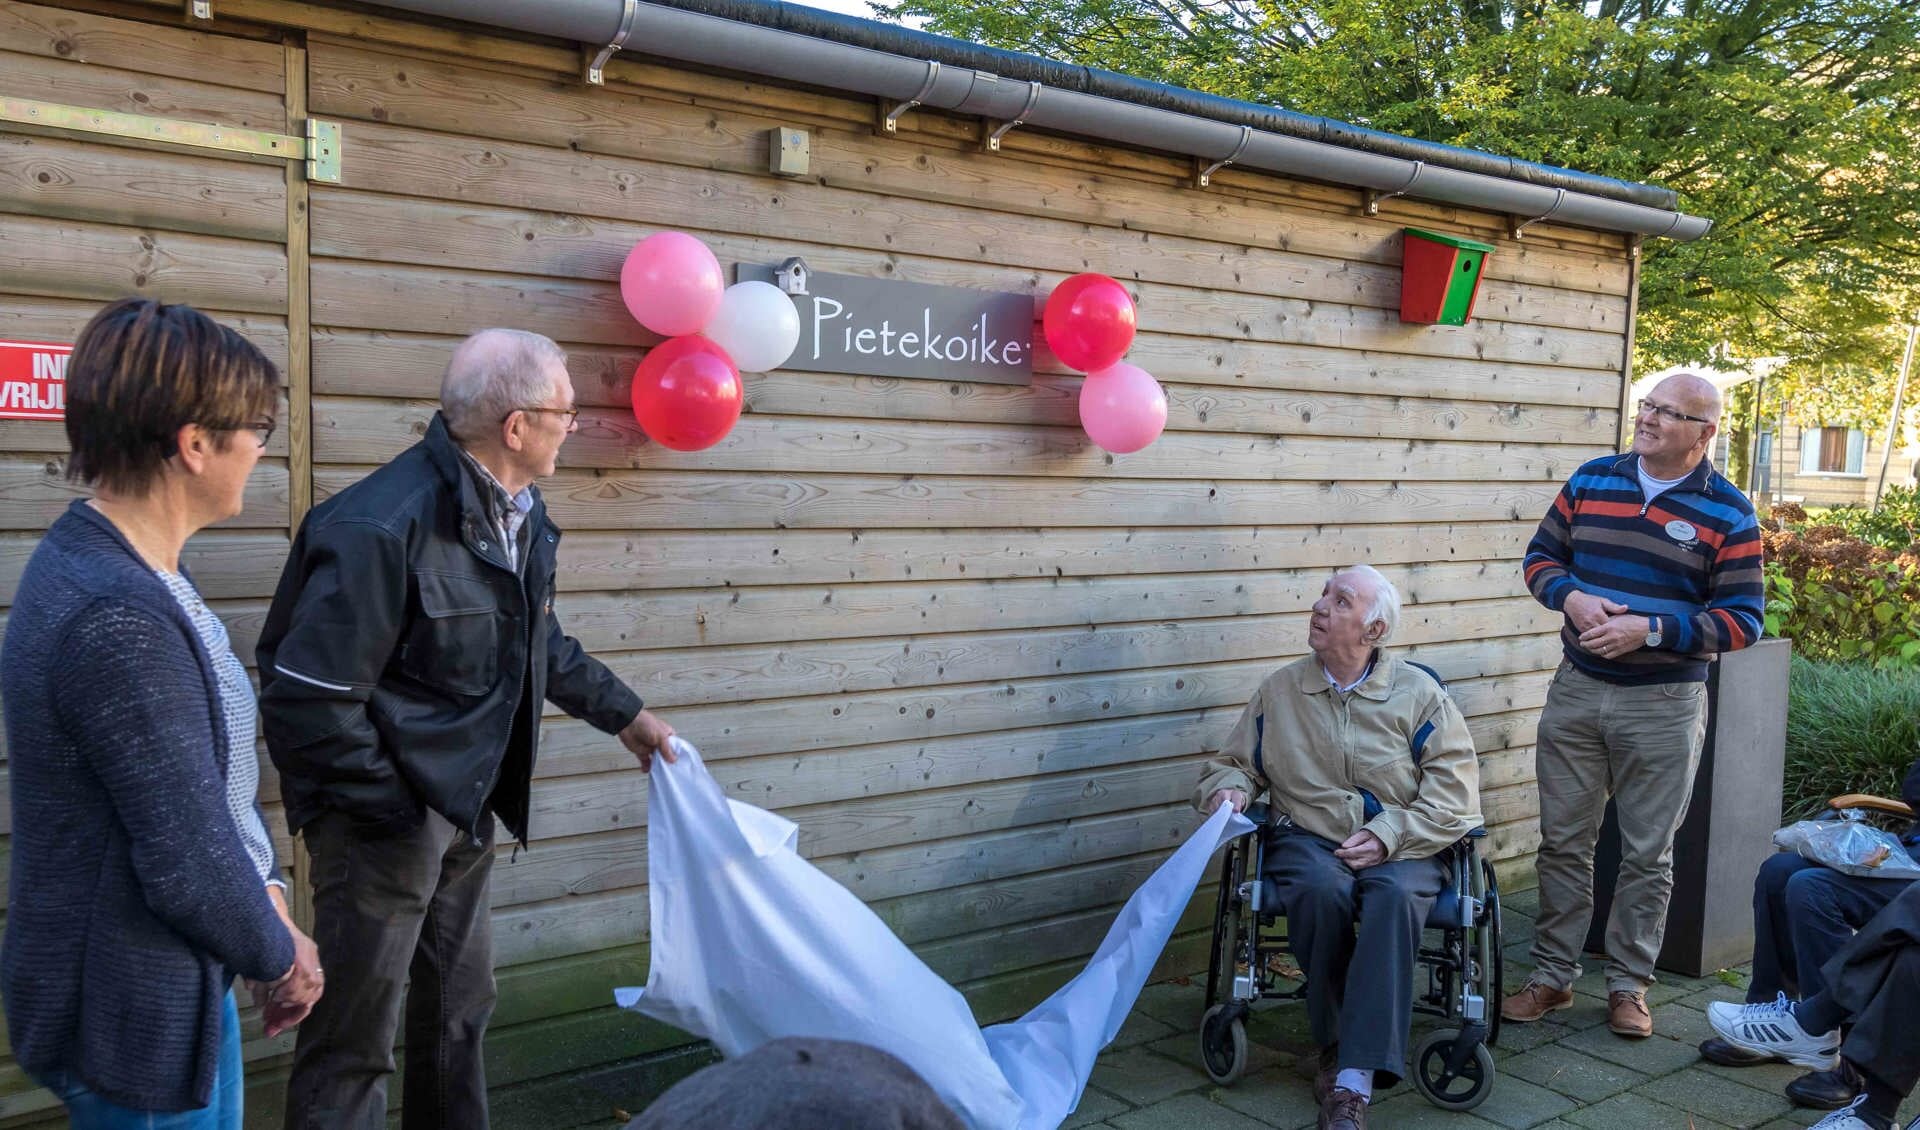 Piet van der Spank onthult vanuit zijn rolstoel het naambord van de houtbewerkingsruimte 'Pietekoike'. 